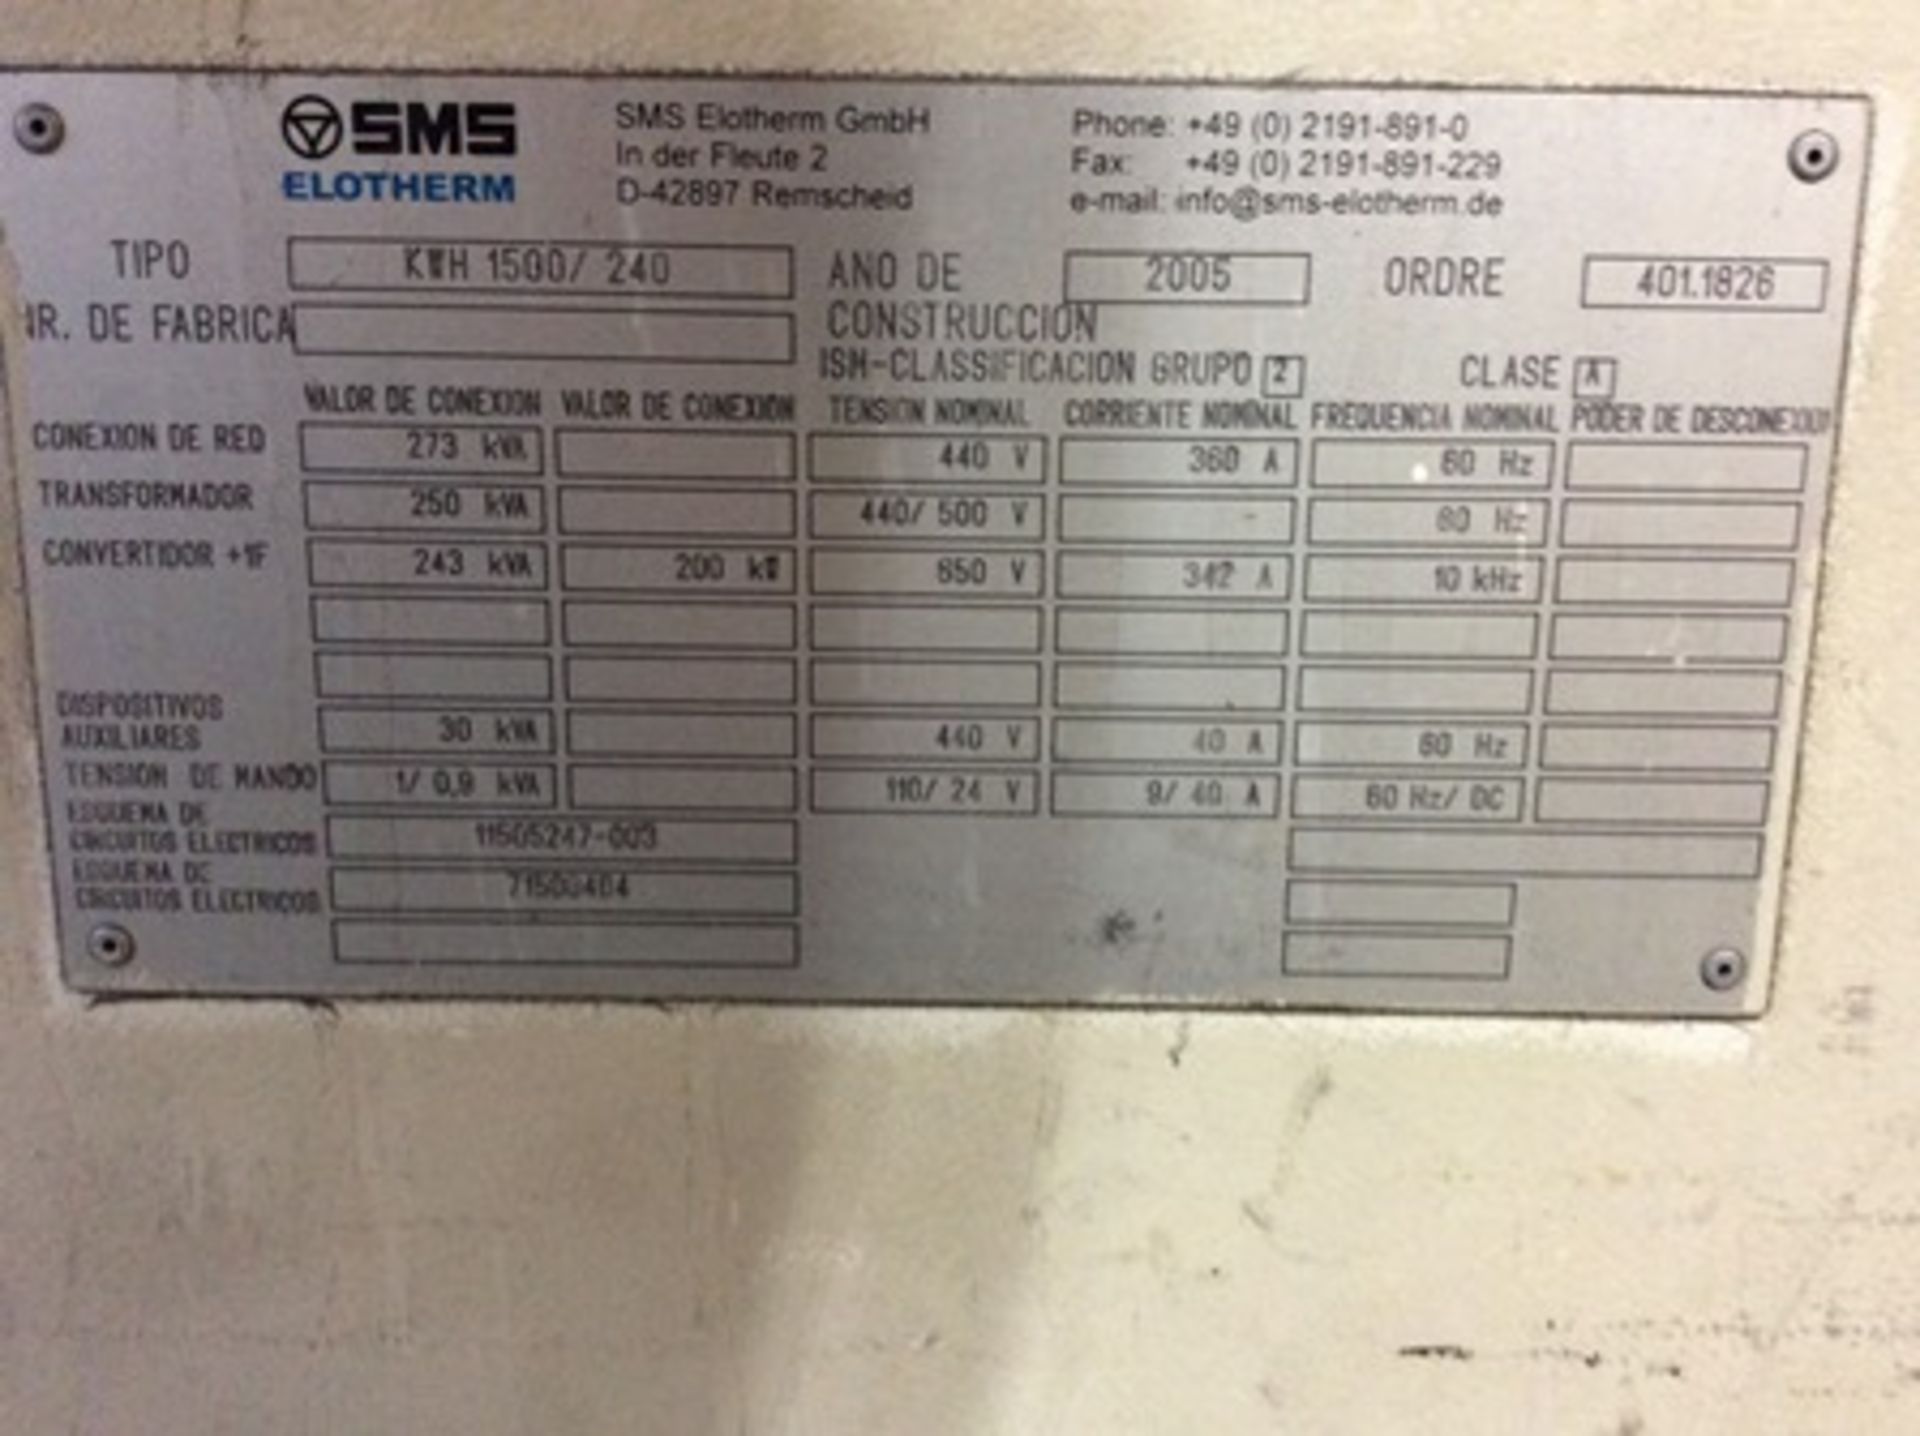 Maquina para tratamiento térmico por inducción marca SMS Elotherm modelo KWH 1500/240 serie 401.182 - Image 17 of 31